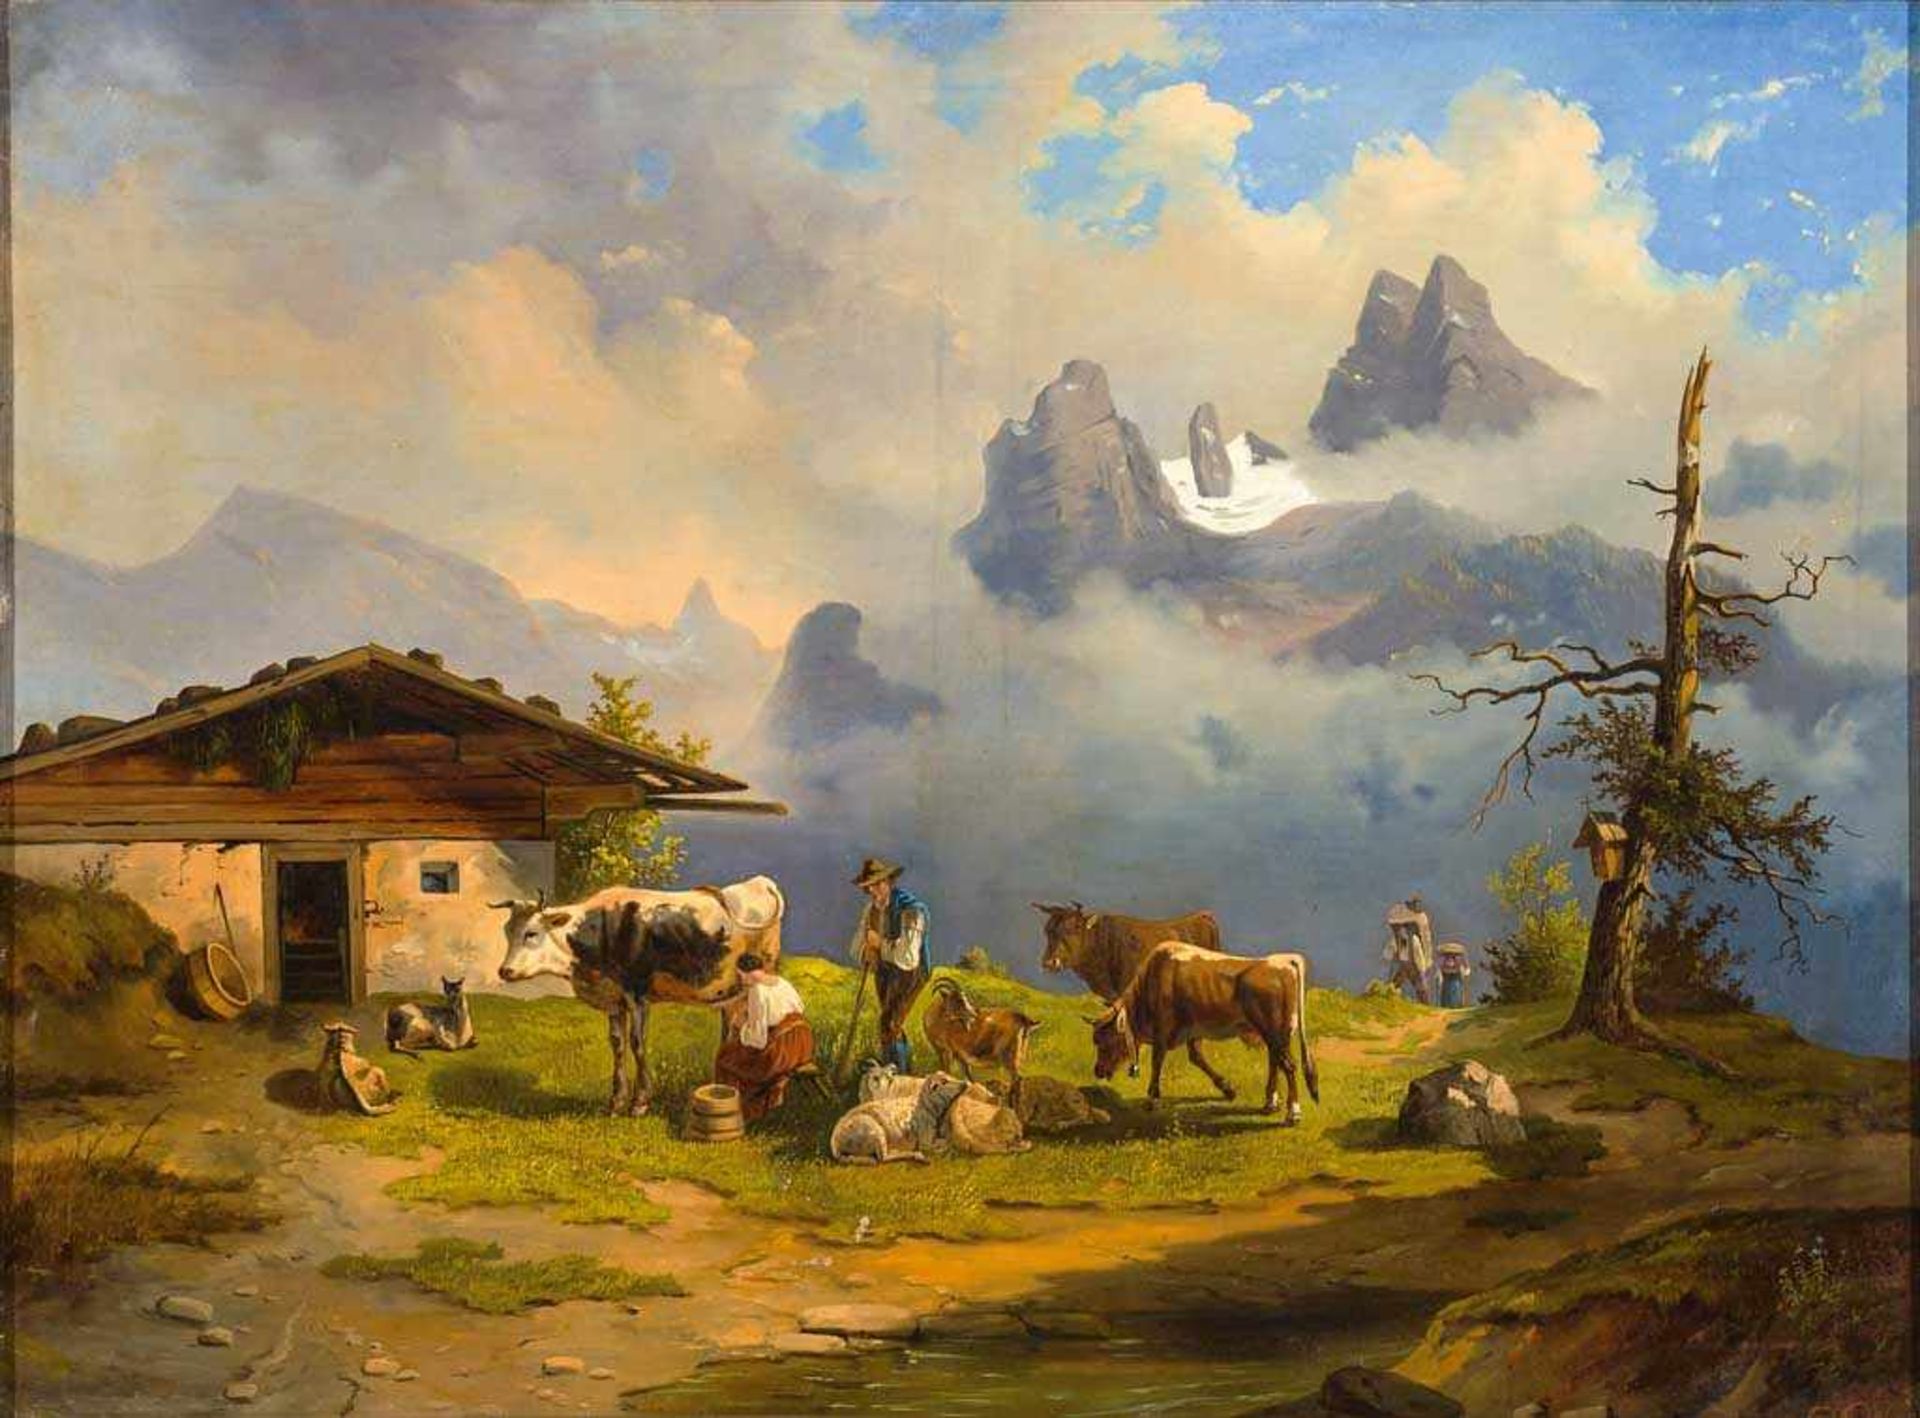 Monogrammist C.H. 1860 dat. Sennerin mit Kühen, Schafen und Ziegen, im Hintergrund aufragendes